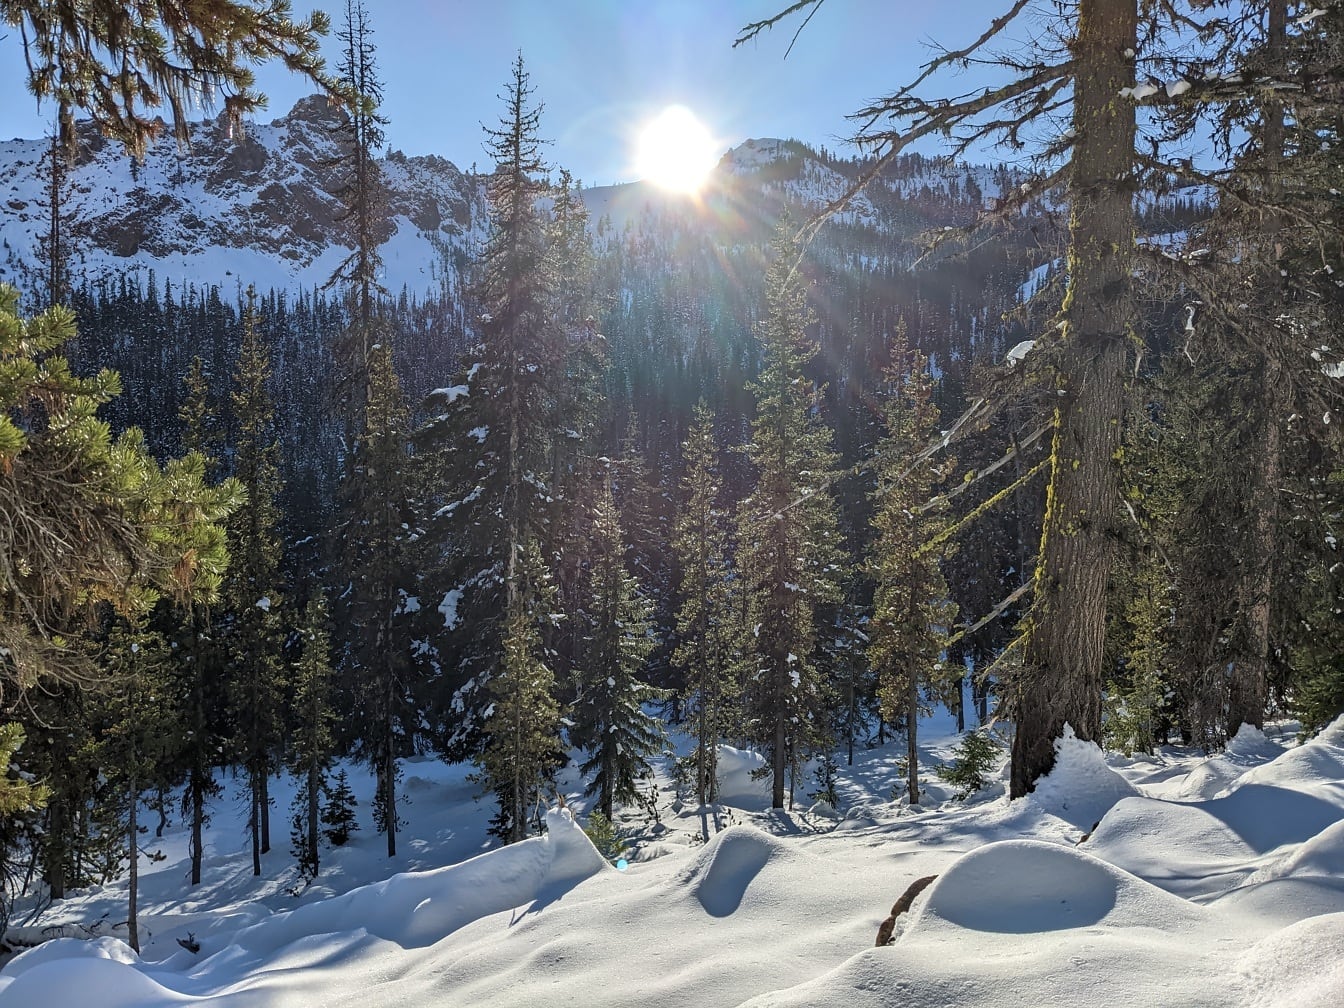 Suncevi zraci u šumi snježnih četinjača zimi u planini